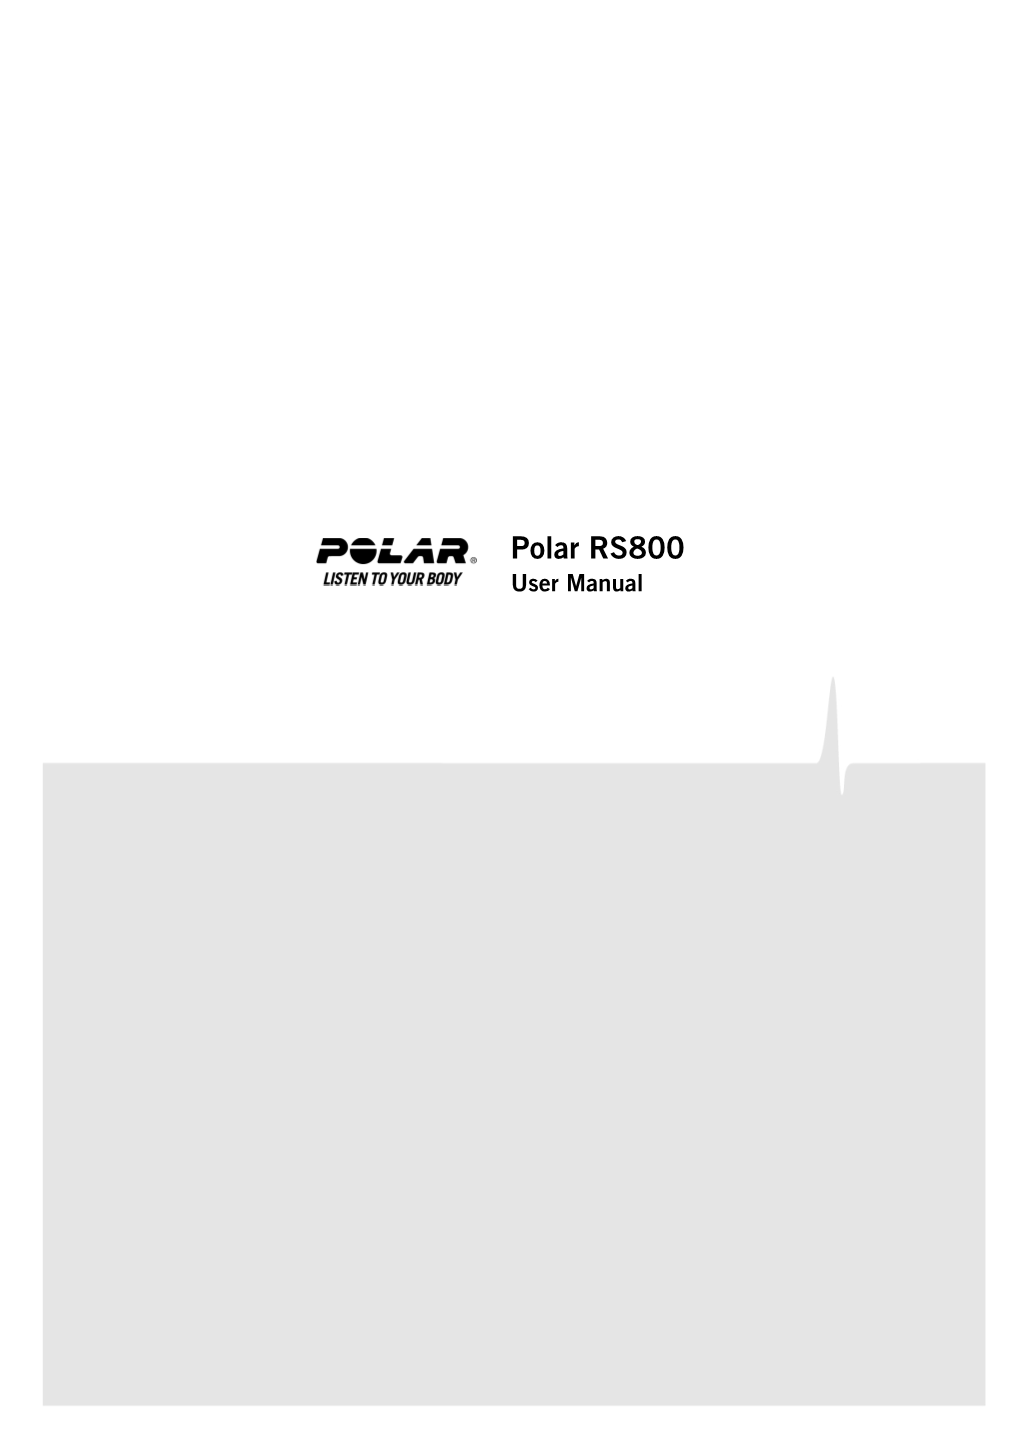 Polar RS800 User Manual Polar RS800 User Manual 2